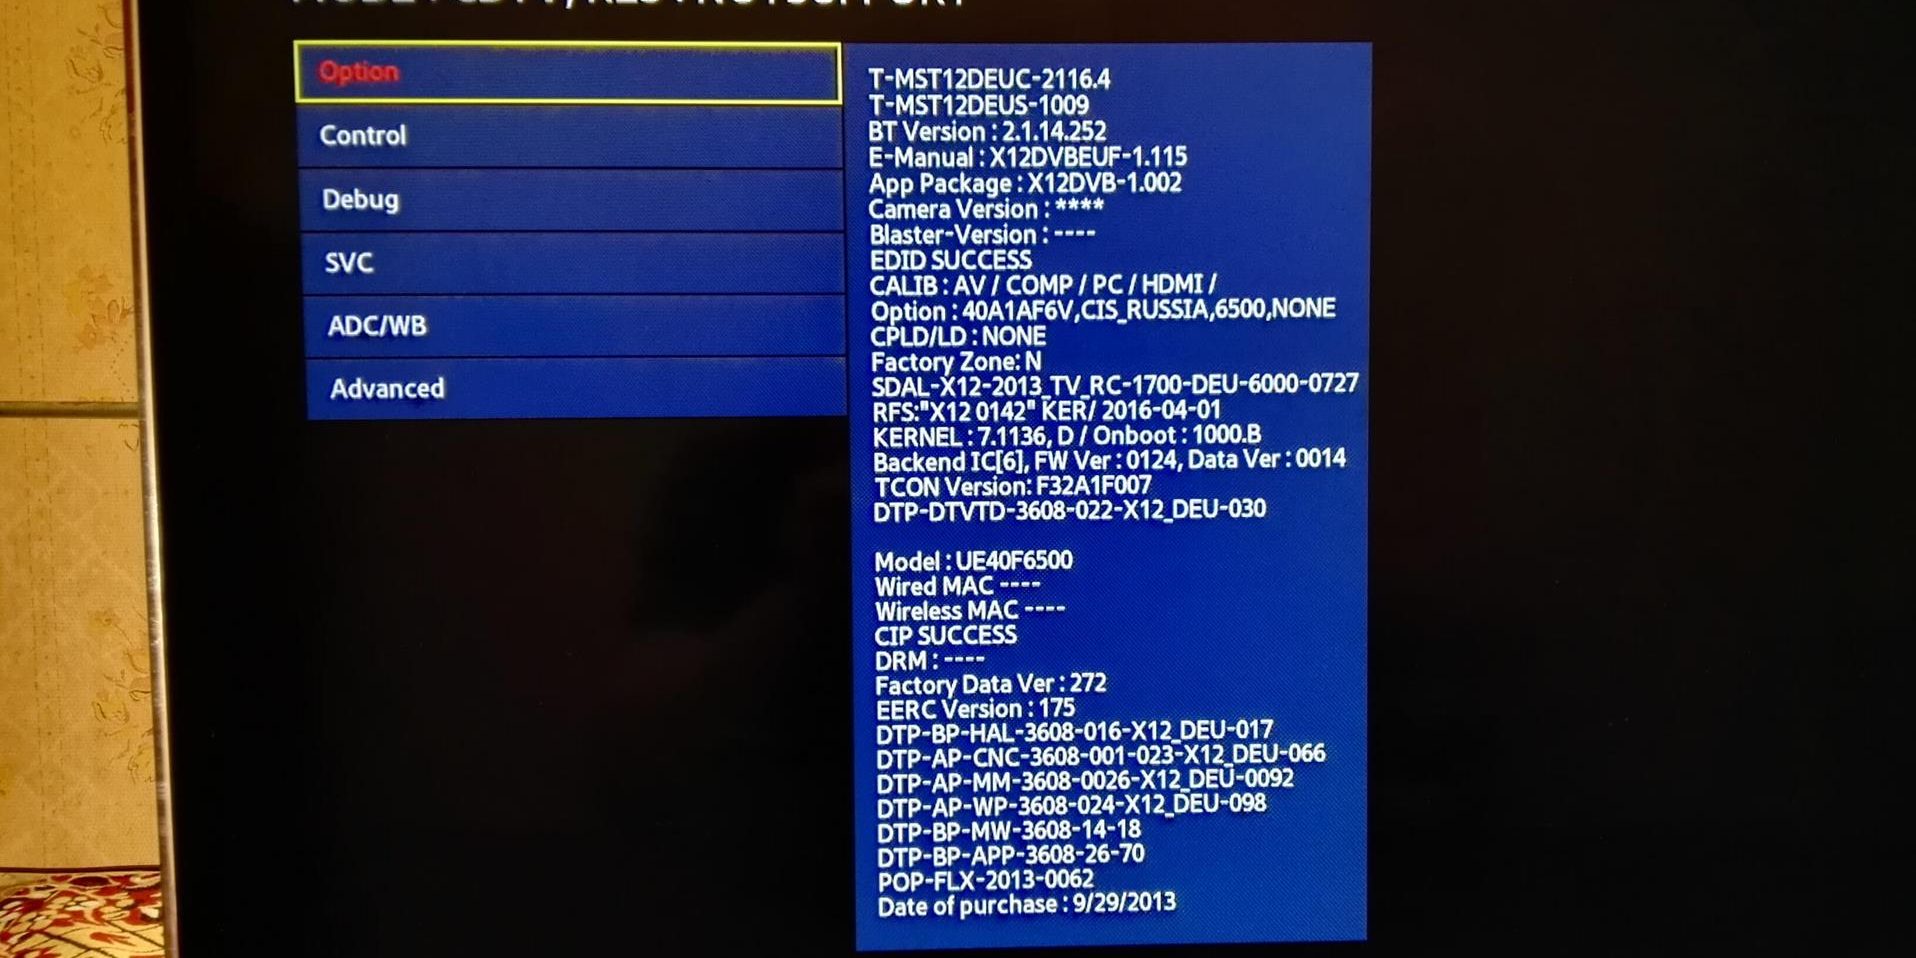 Как войти в инженерное (сервисное) меню на телевизоре Samsung. Фото и видеоинструкция.